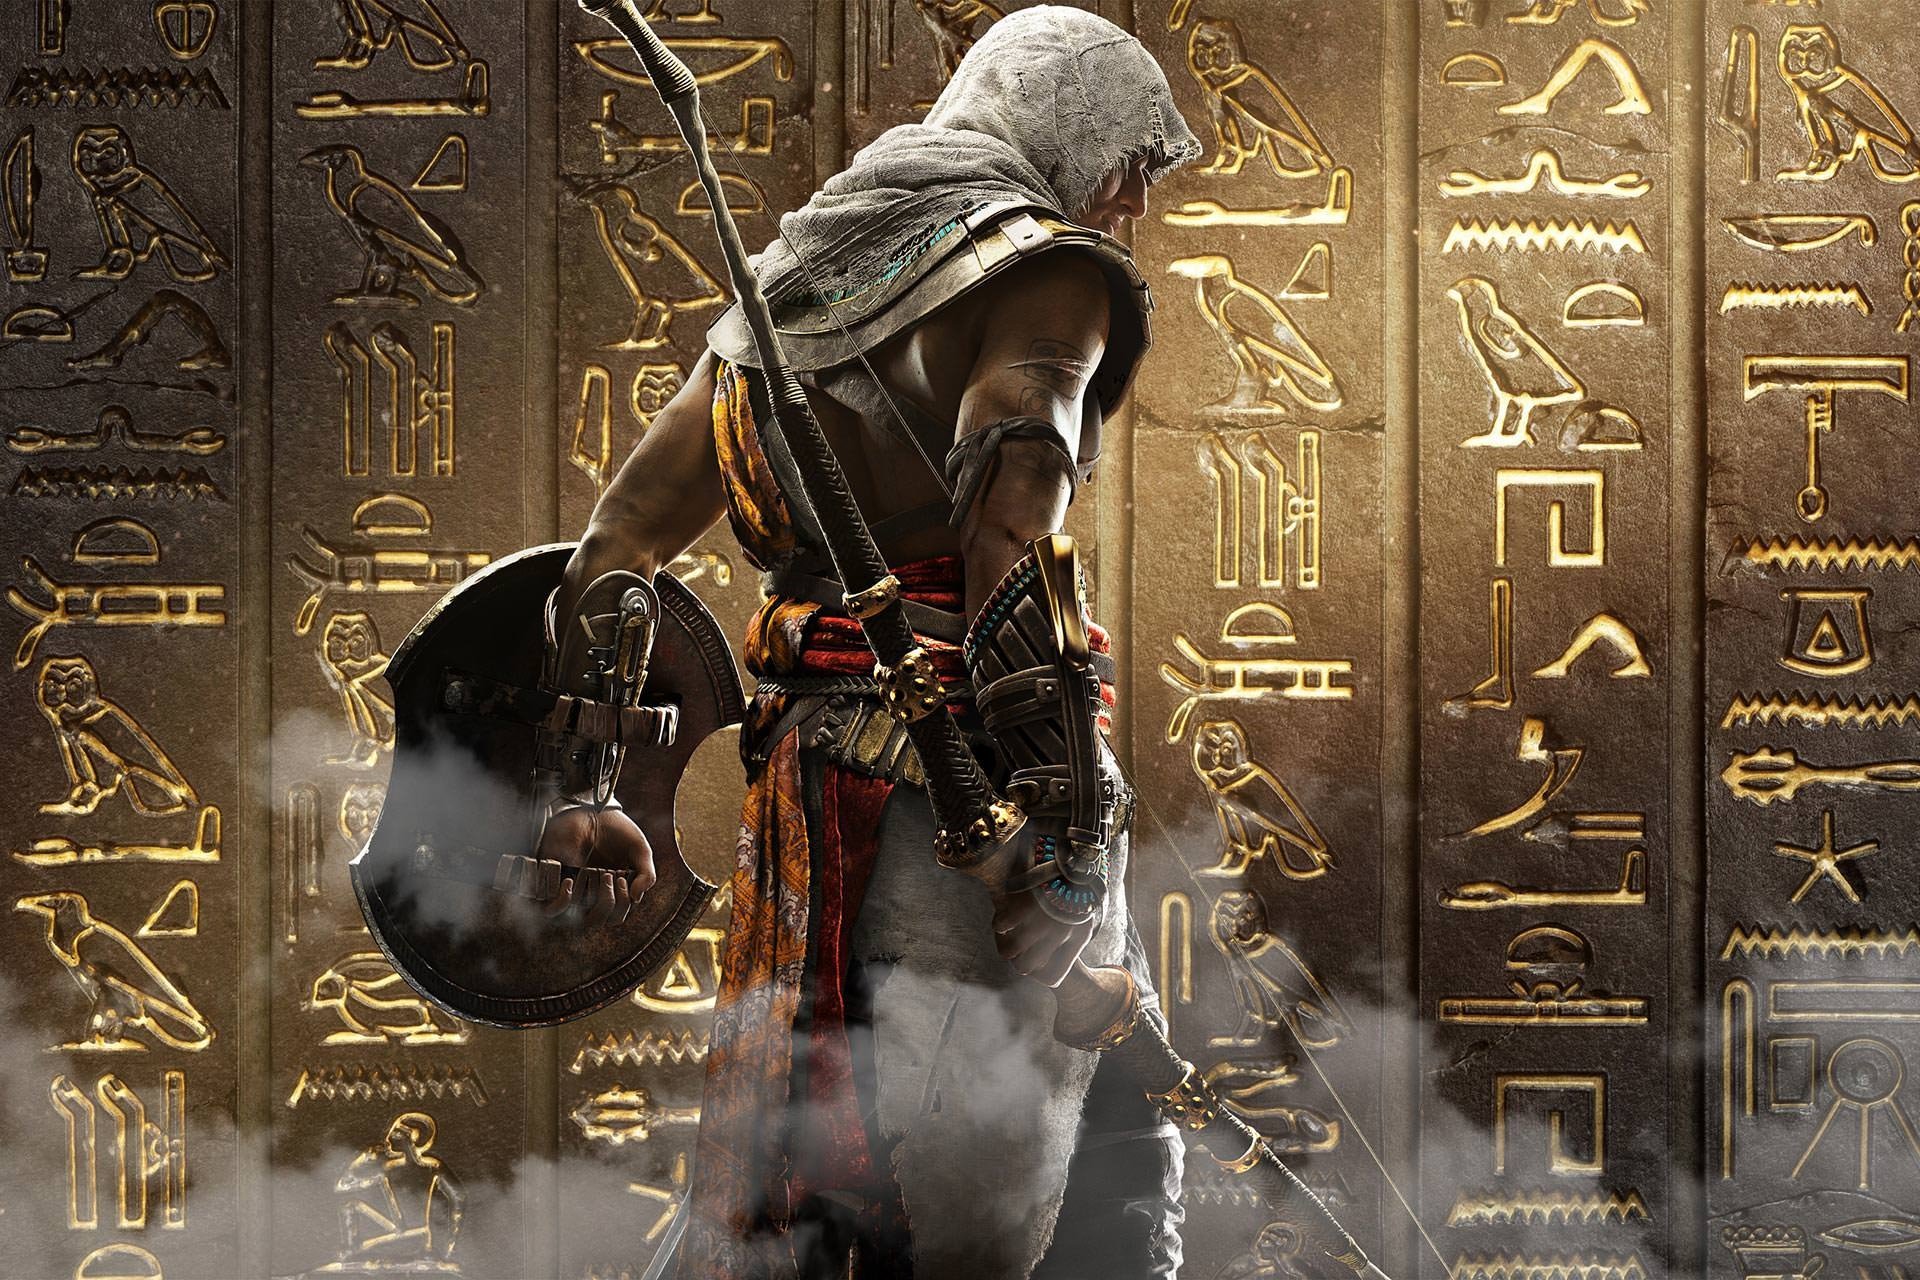 خرید بازی Assassin's Creed: Origins - اساسین کرید: اوریجینز ایکس باکس xbox با قیمت مناسب همراه نقد و بررسی